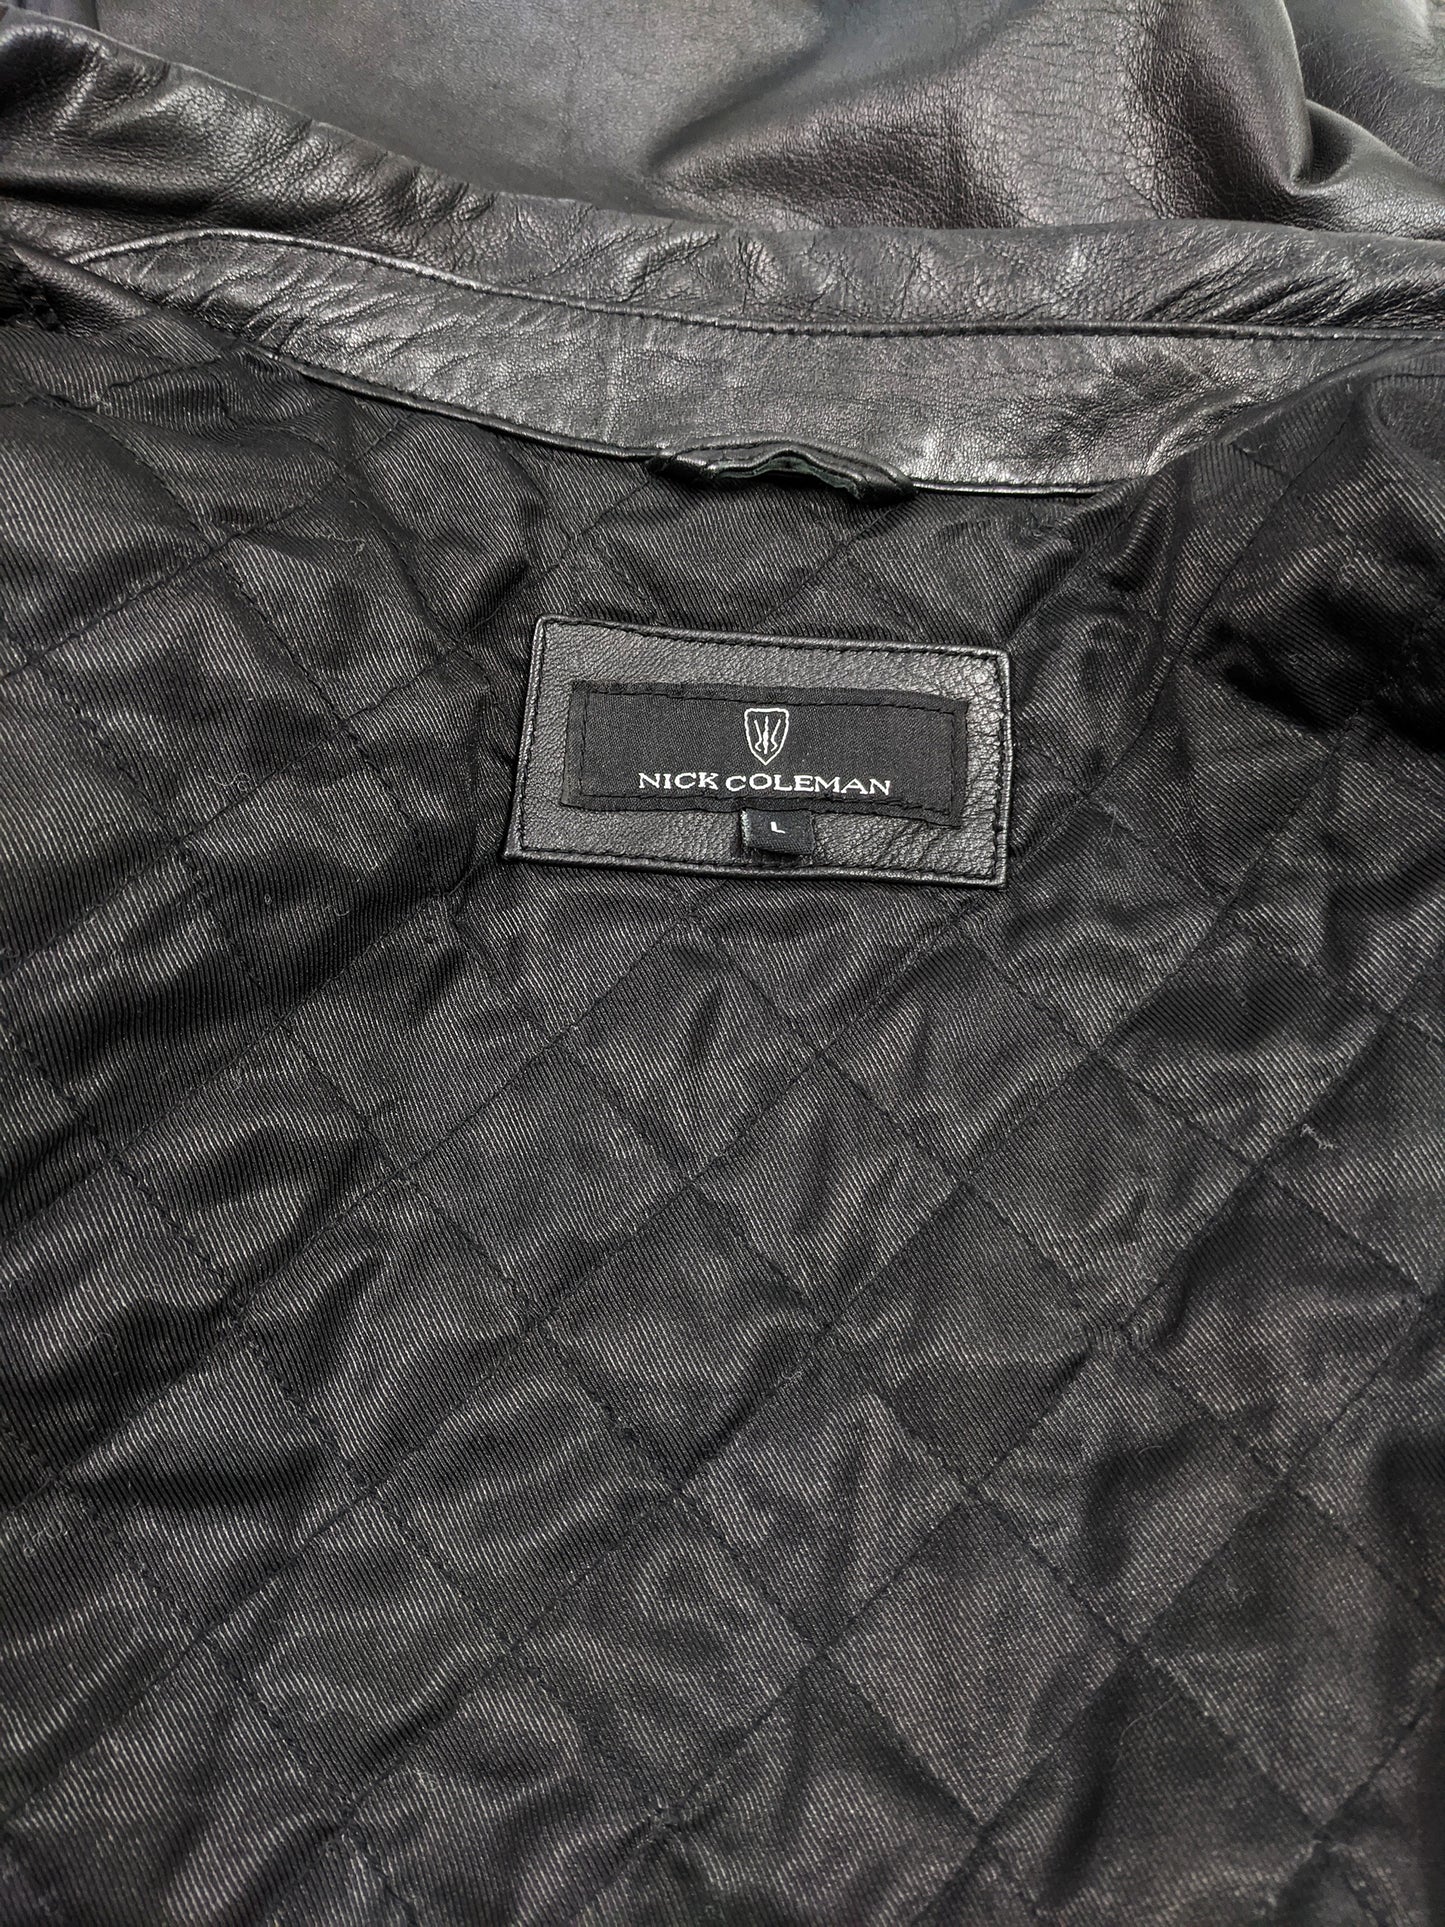 Vintage Mens Safari Style Black Leather Half Norfolk Jacket, 1990s